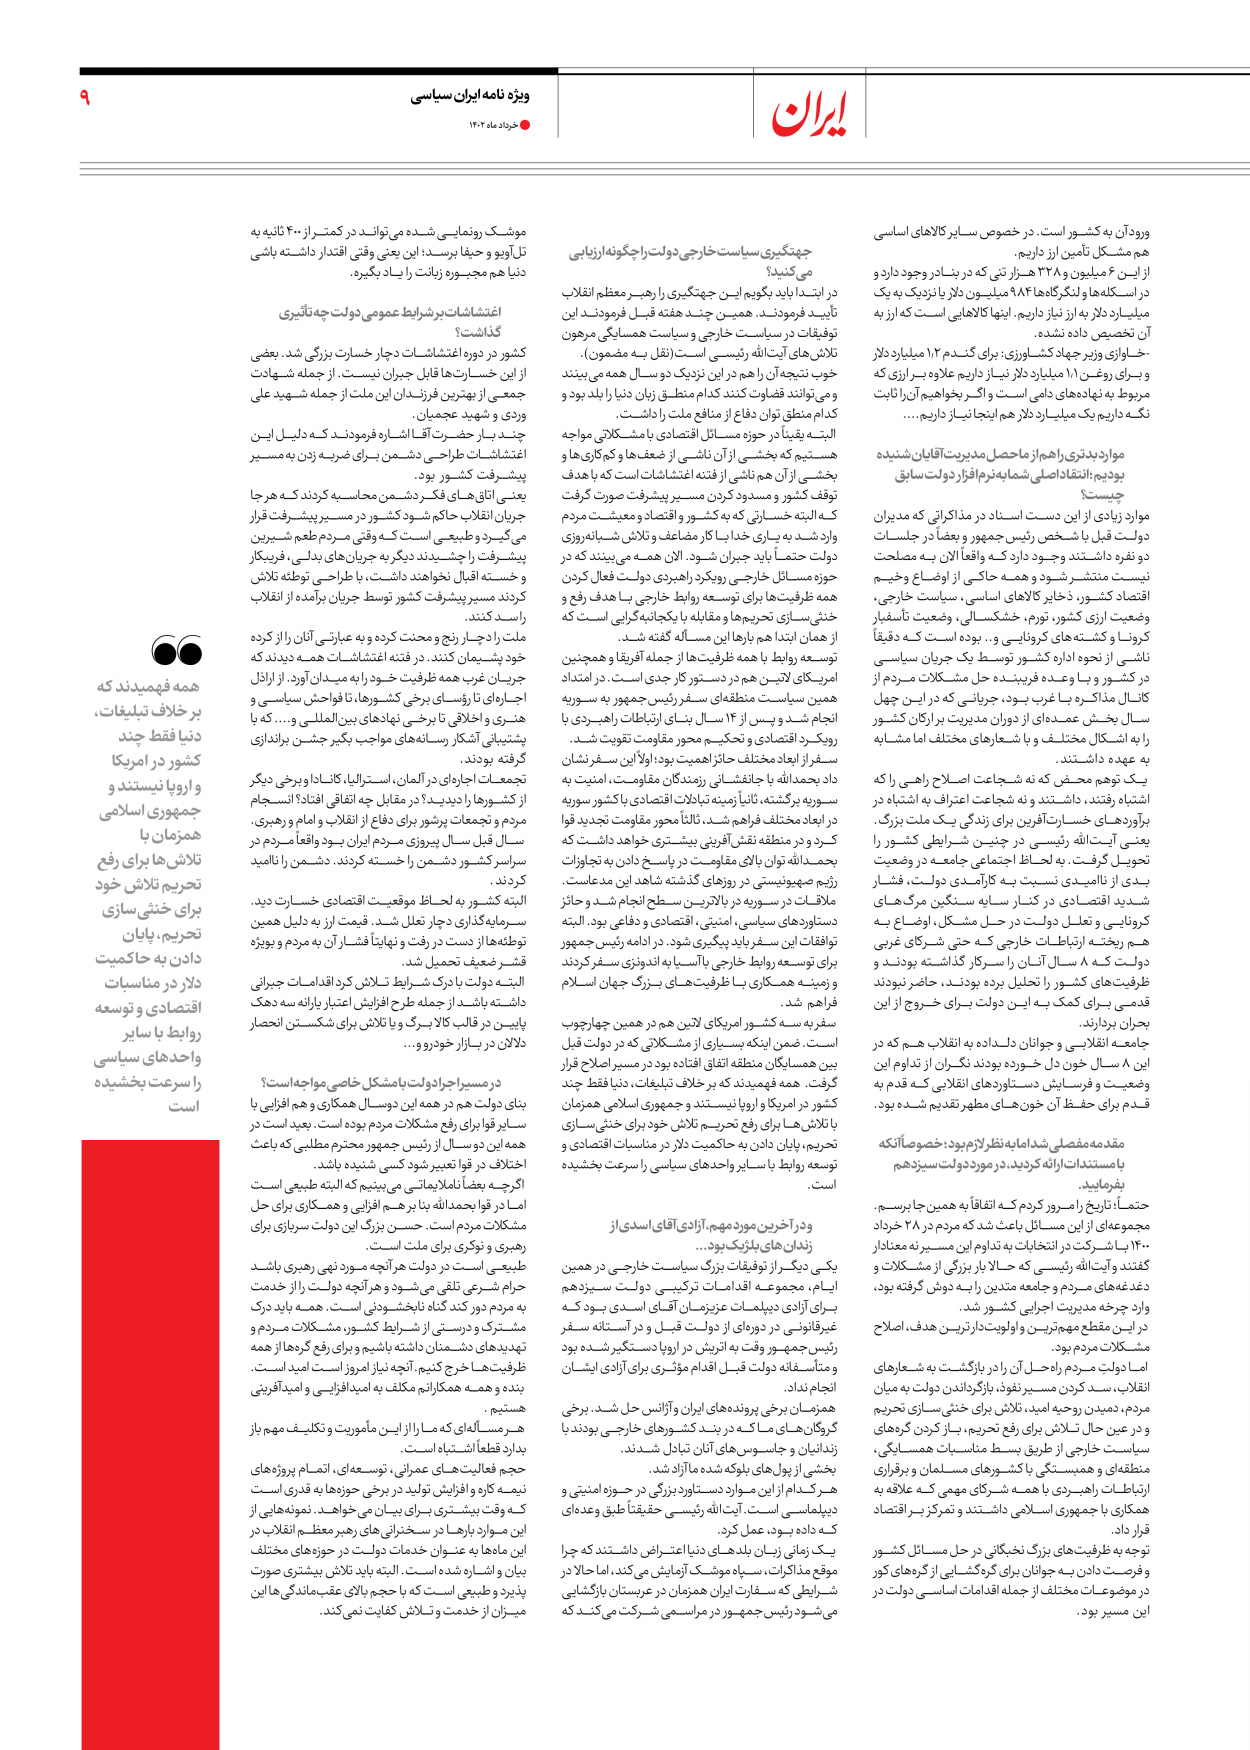 روزنامه ایران - ویژه نامه ویژه سالگرد انتخابات ریاست جمهوری - ۲۸ خرداد ۱۴۰۲ - صفحه ۹